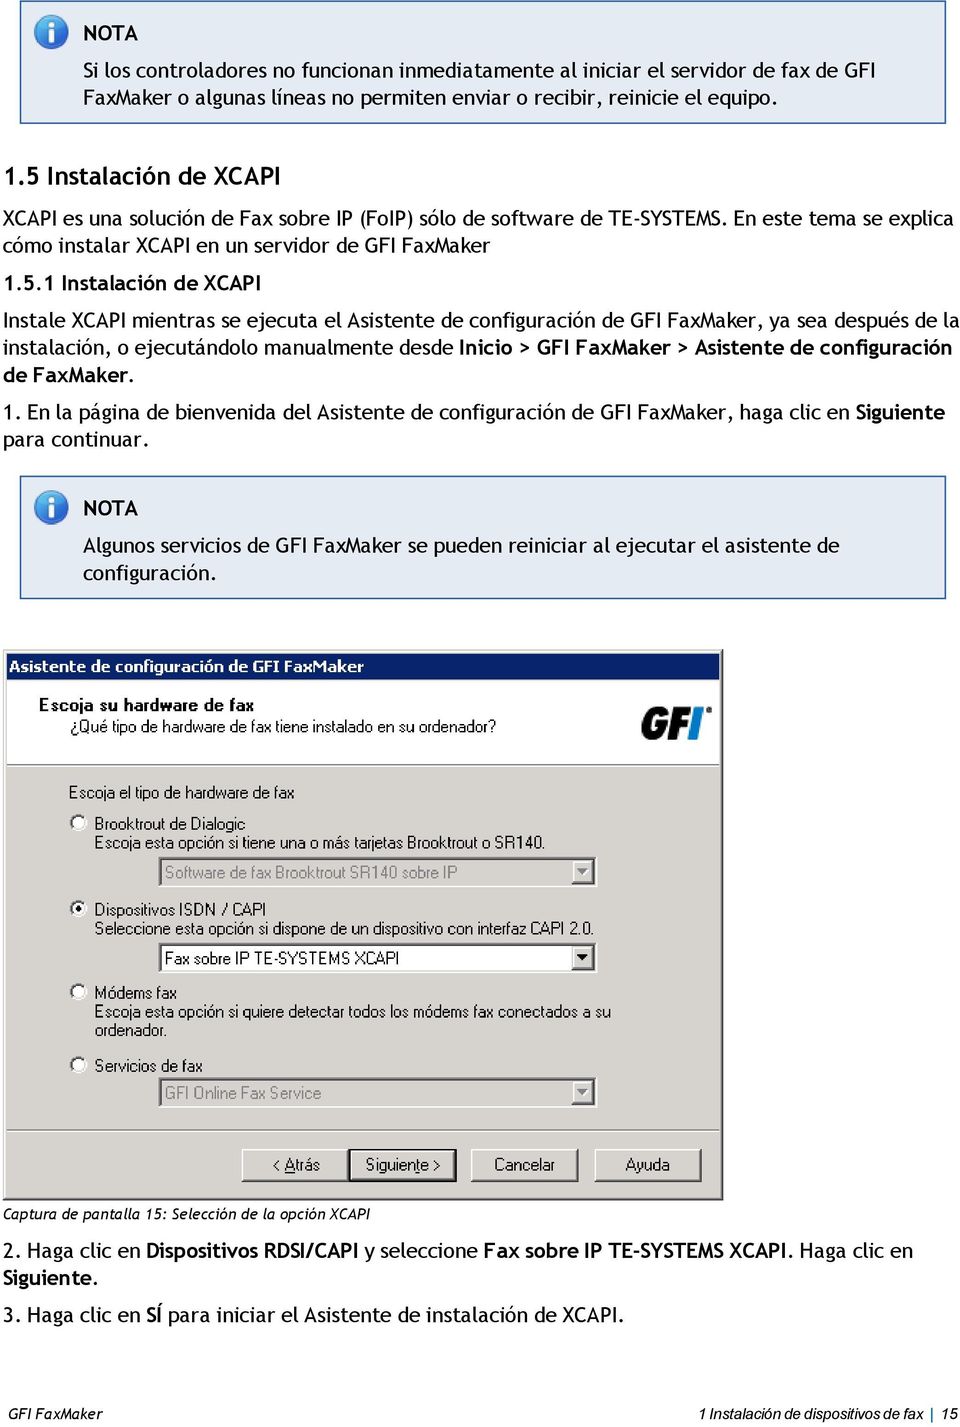 XCAPI Instale XCAPI mientras se ejecuta el Asistente de configuración de GFI FaxMaker, ya sea después de la instalación, o ejecutándolo manualmente desde Inicio > GFI FaxMaker > Asistente de